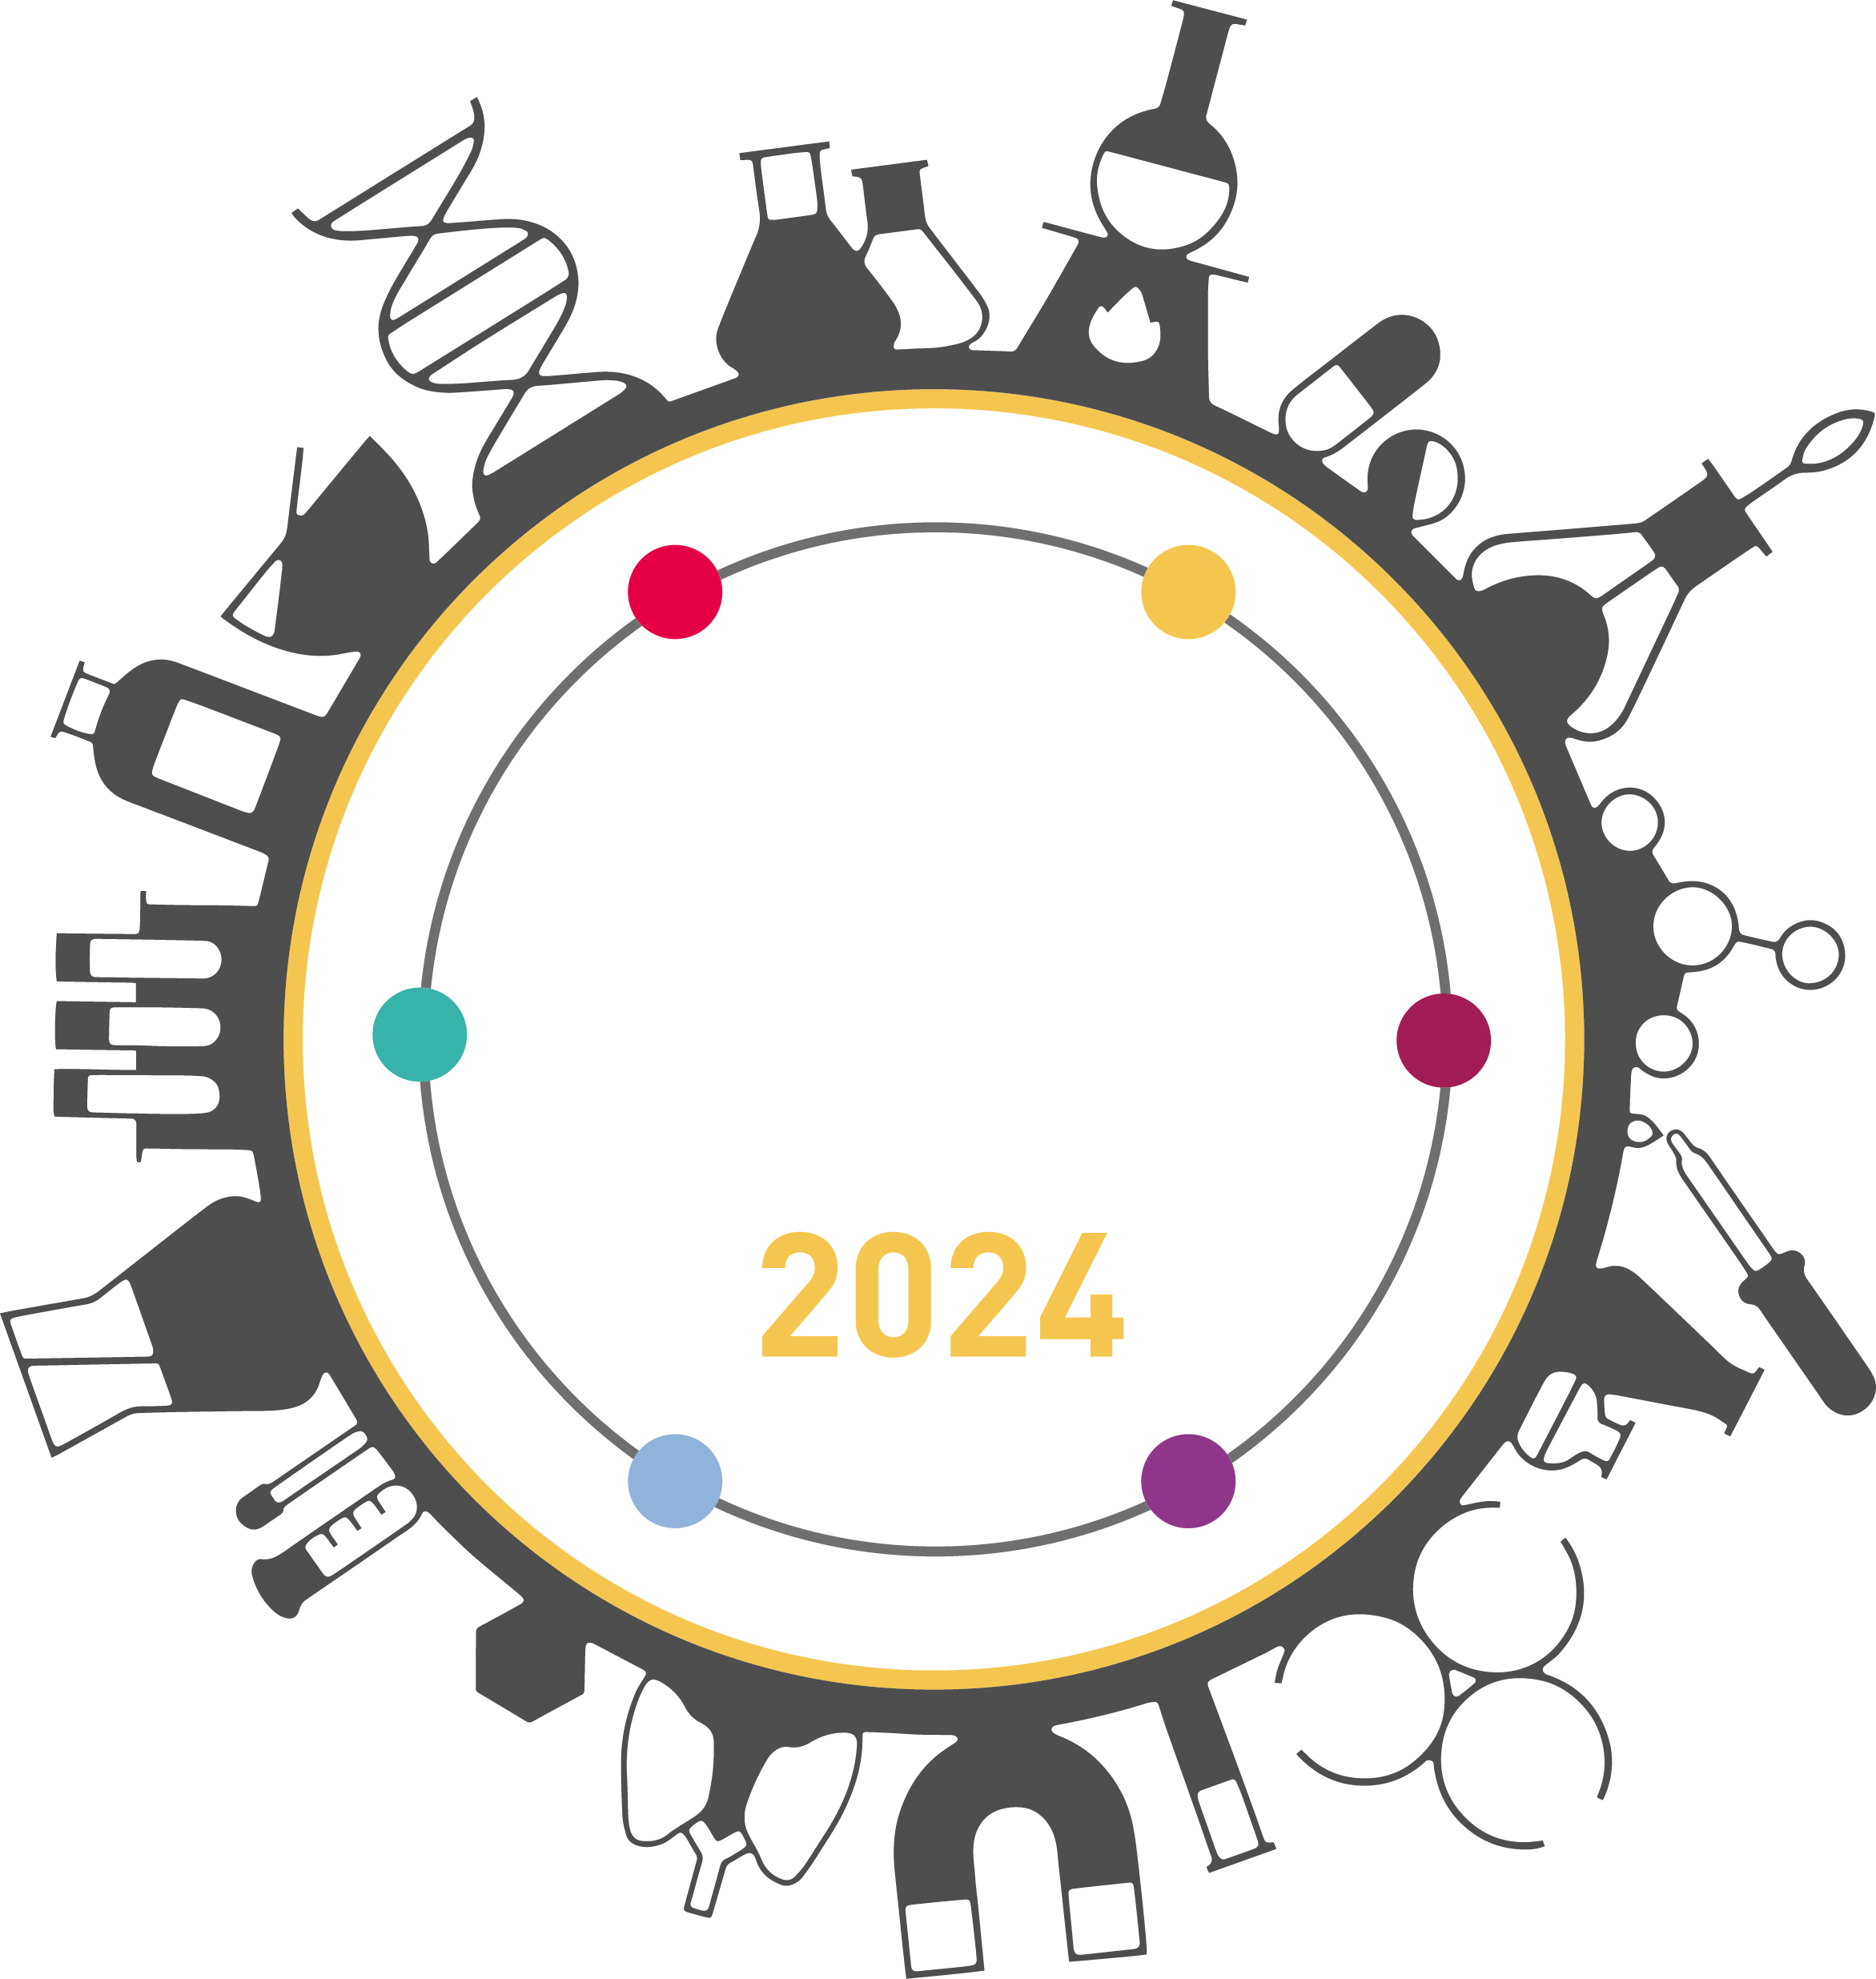 Scientific Laboratory Show & Conference  2024